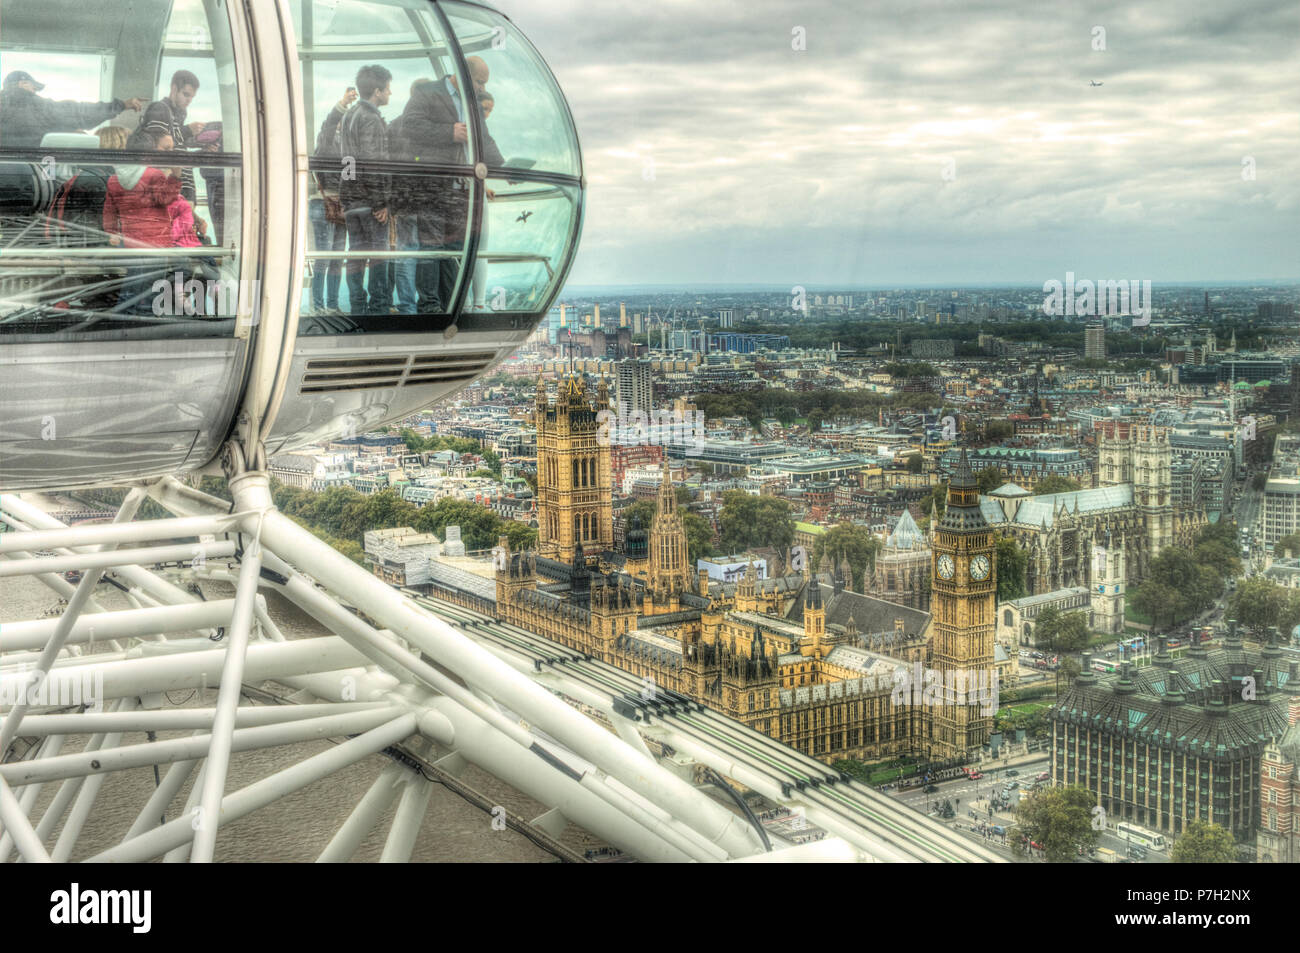 Londres, Royaume-Uni - Octobre 26, 2014 - vue panoramique de Londres (Westminster, Big Ben, Westminster Abbey, Green Park, Battersea Power Station) à partir d'une London Eye Banque D'Images